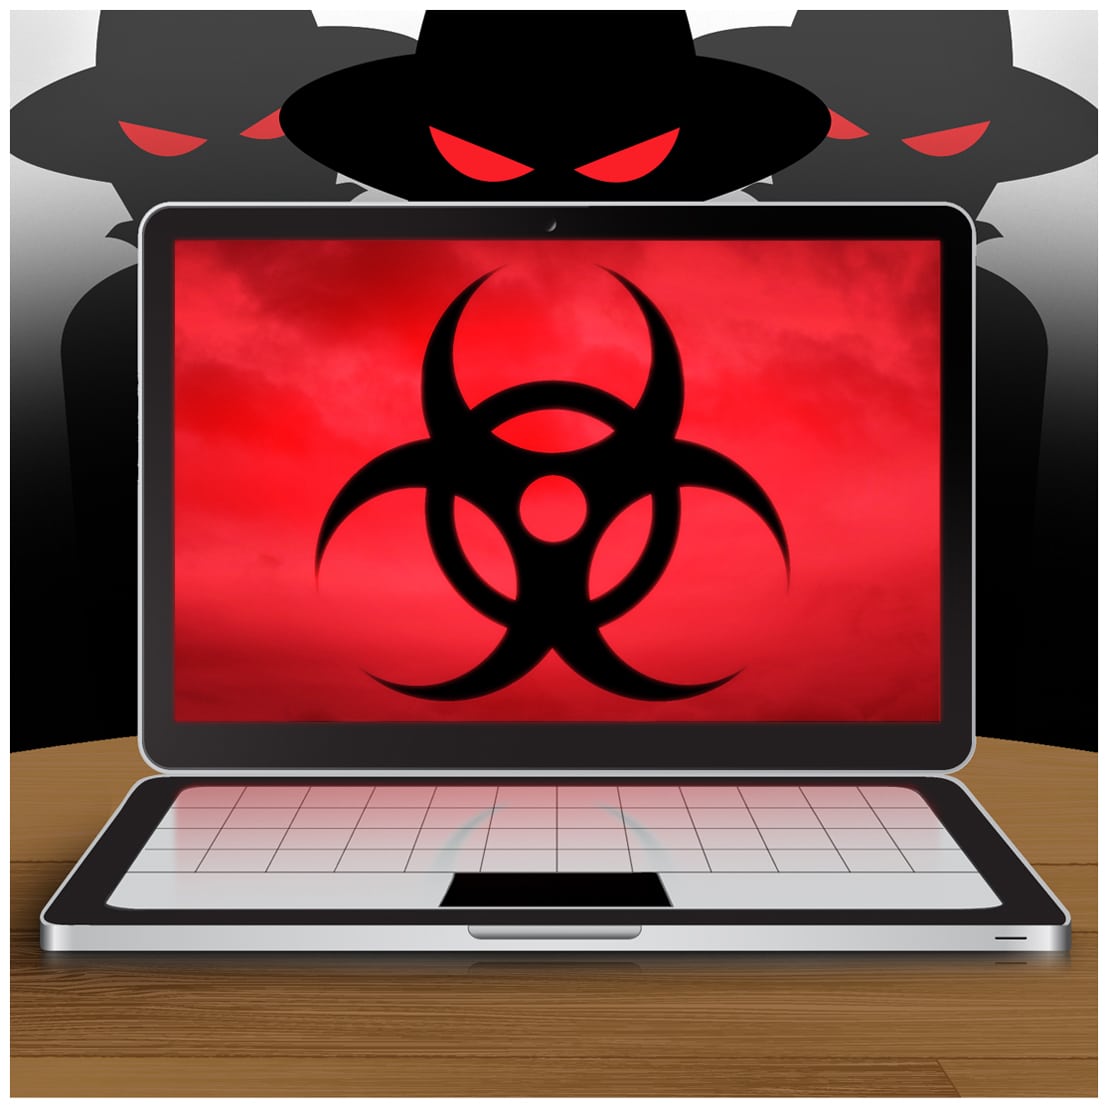 Según Kapersky Lab en 2013 aparecieron 315.000 nuevos malware.